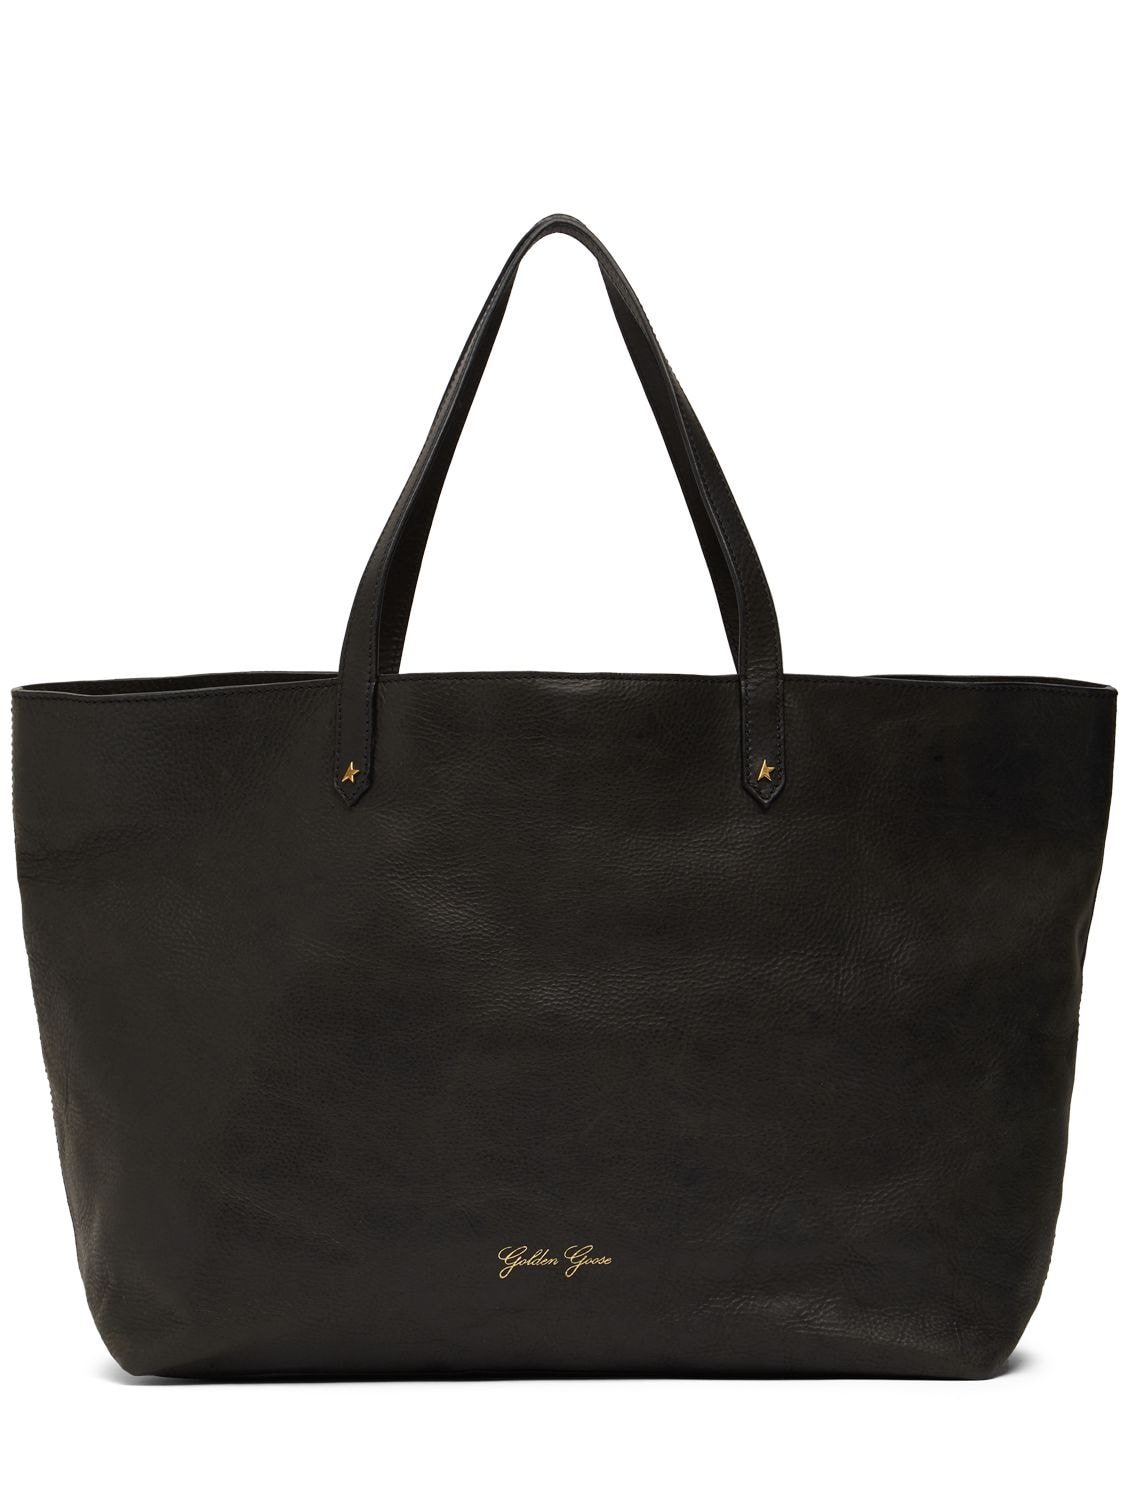 Golden Goose Golden Pasadena Leather Tote Bag In Black